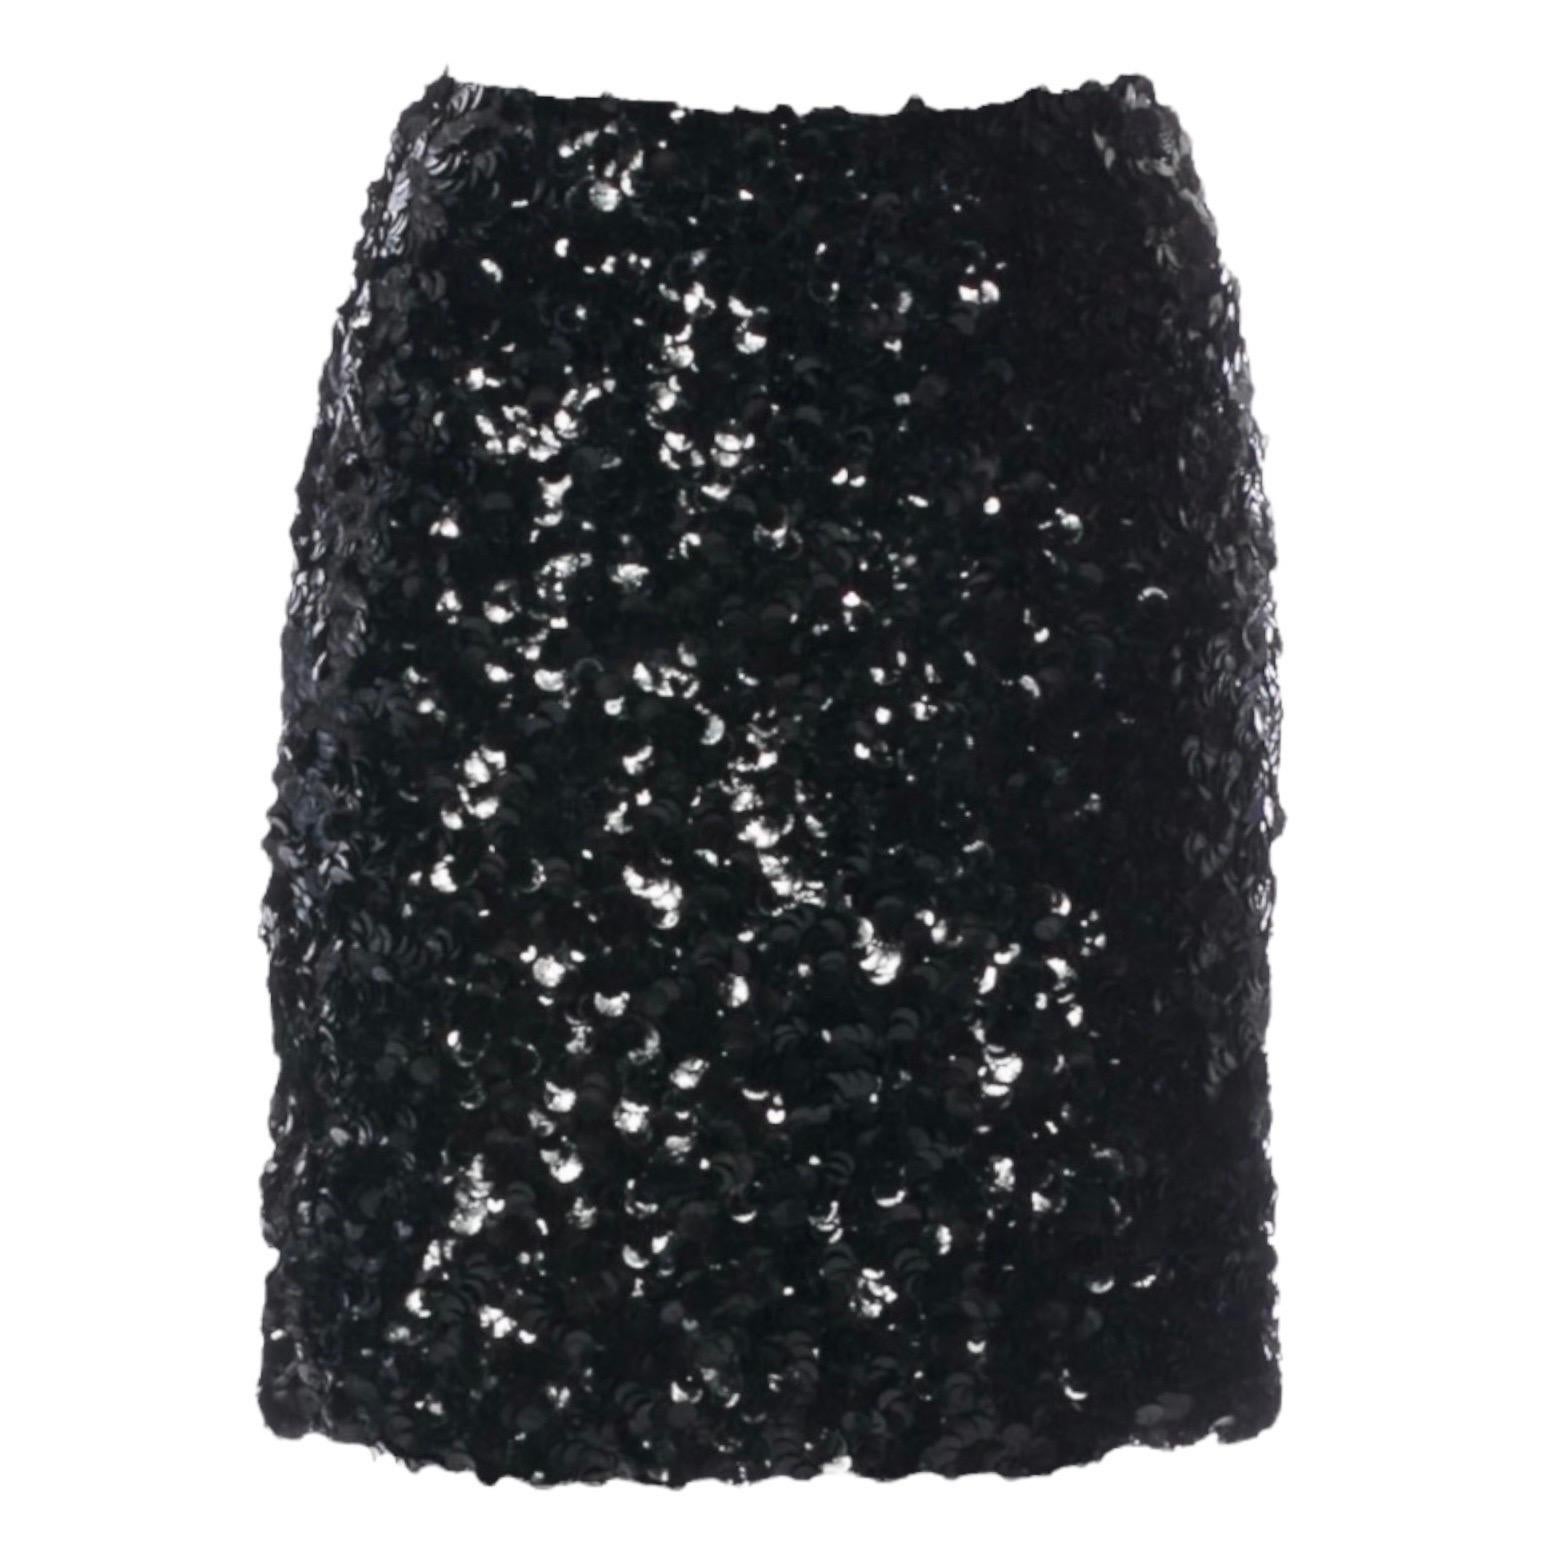 UNWORN Chanel Metallic Fantasy Tweed Sequin Trim Jacket Blazer Skirt Suit 38-40 For Sale 8